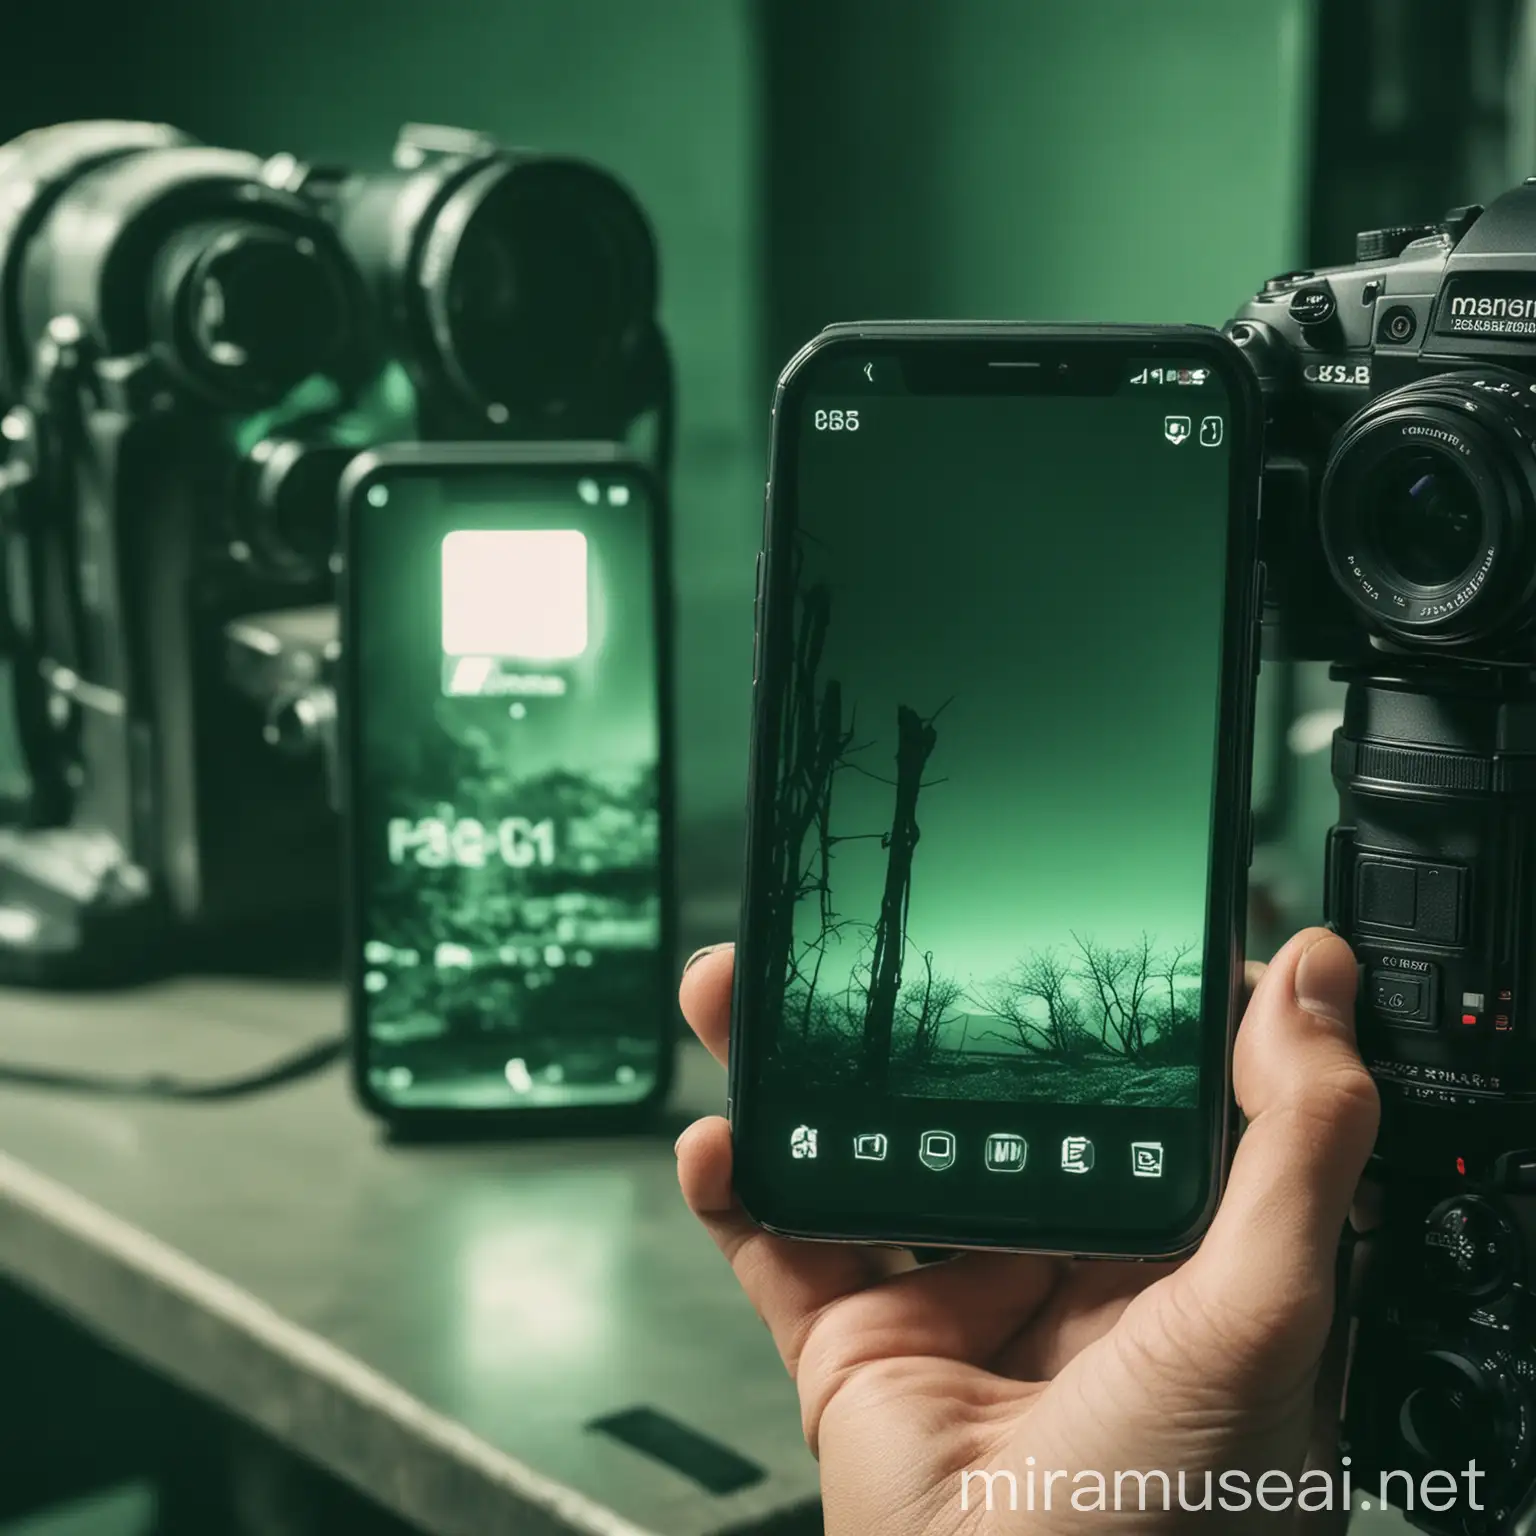 crea una imagen de un telefono celular al lado de una cámara profesional con un tinte verde intenso
